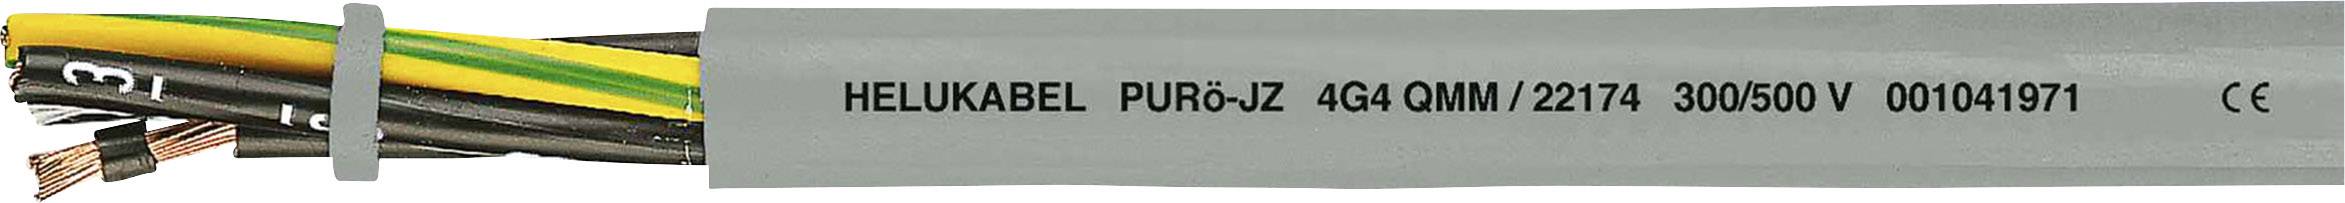 HELUKABEL PURö-JZ Steuerleitung 3 G 0.75 mm² Grau 22117 100 m